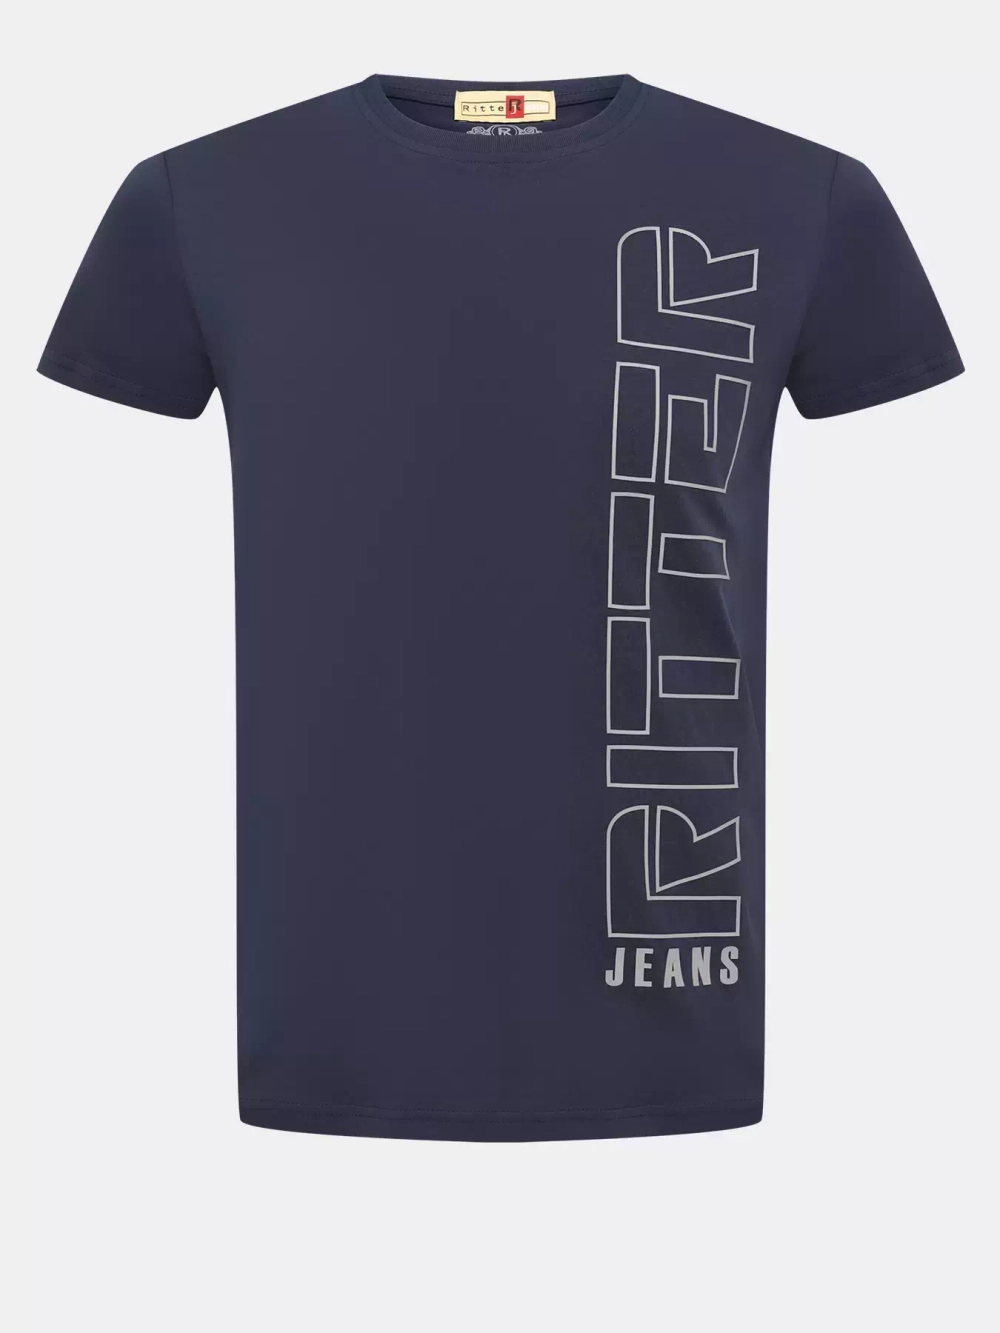 Футболка Ritter jeans 454309 K/11/030/461/S24